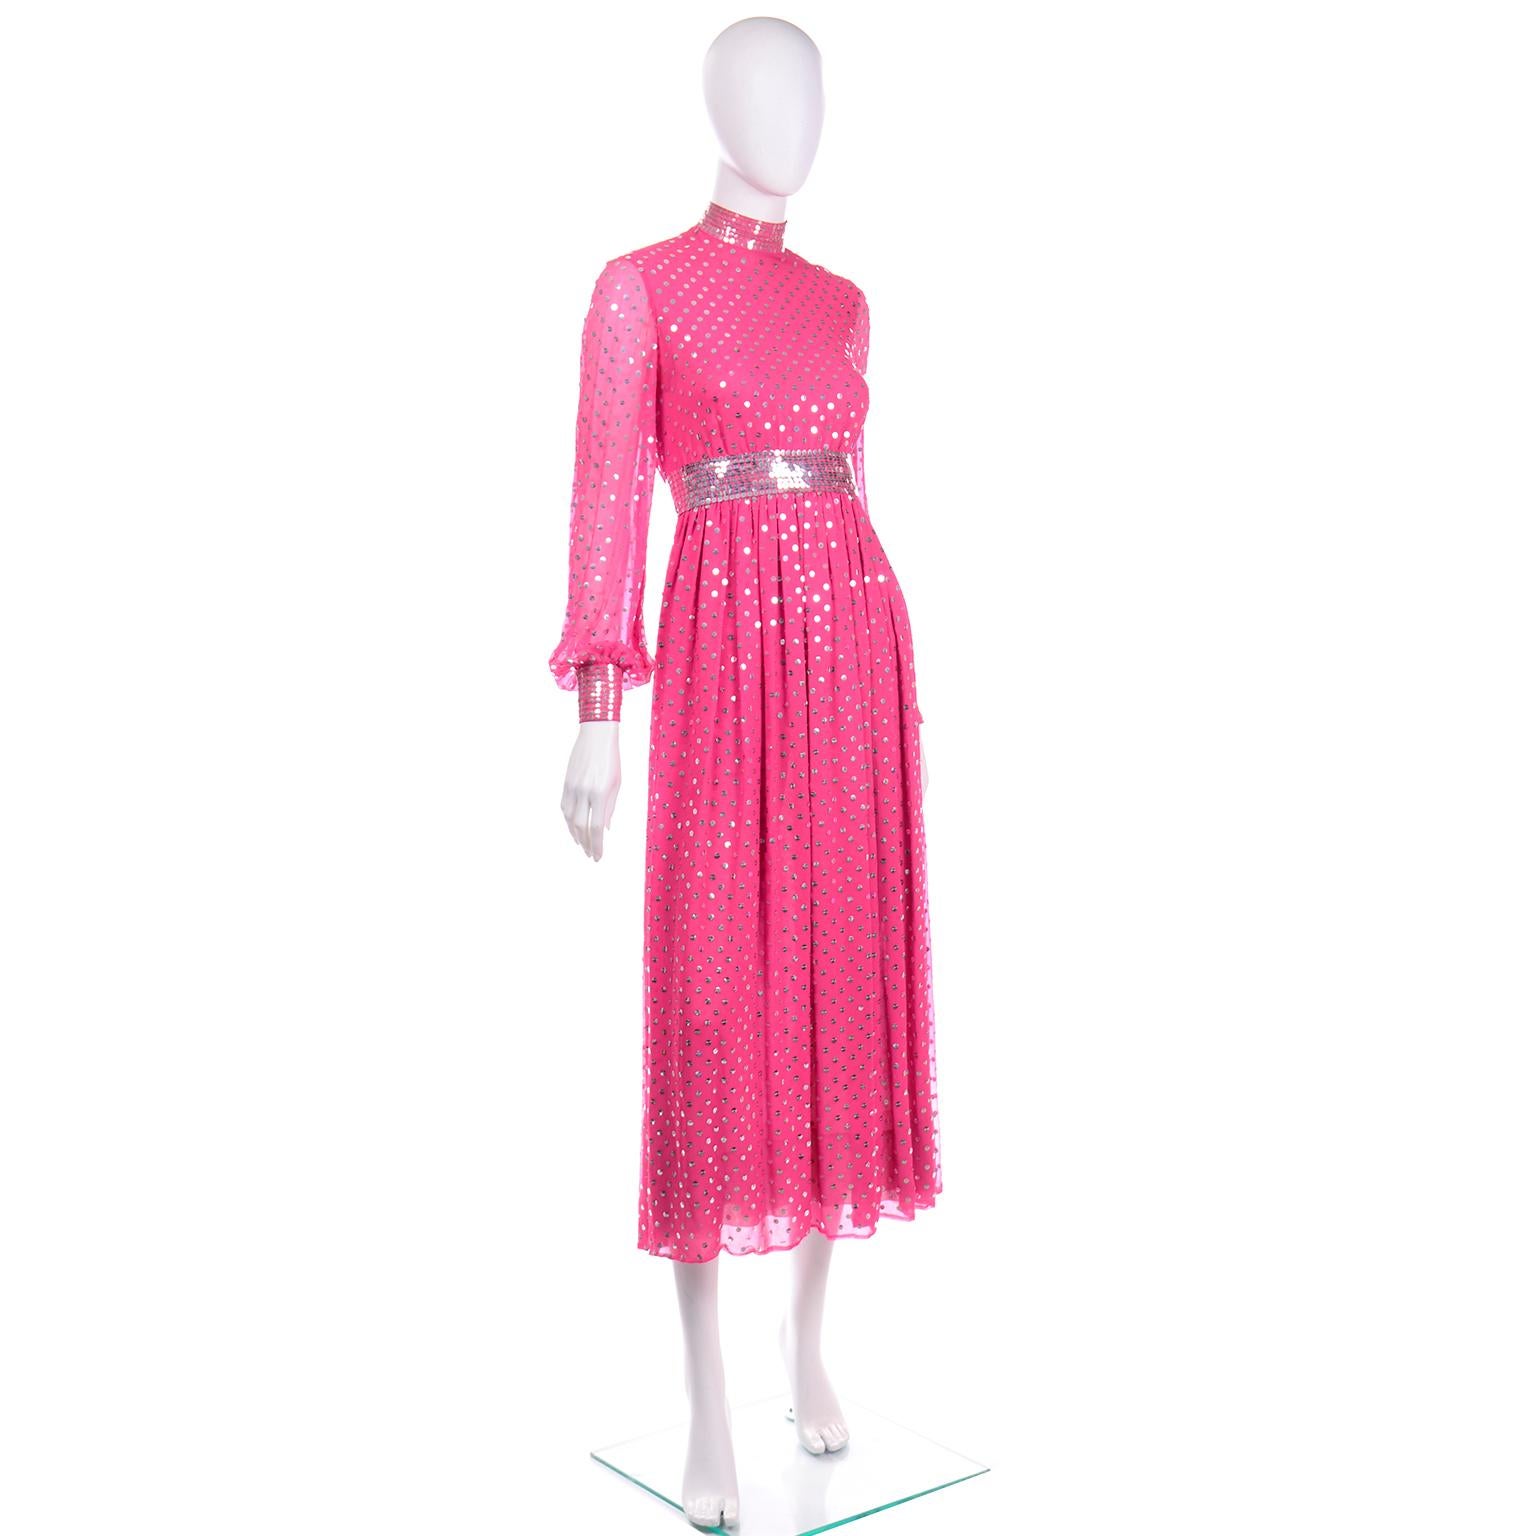 Norman Norell Rosa Vintage-Seidenkleid mit silbernen & durchsichtigen Pailletten und durchsichtigen Ärmeln  Damen